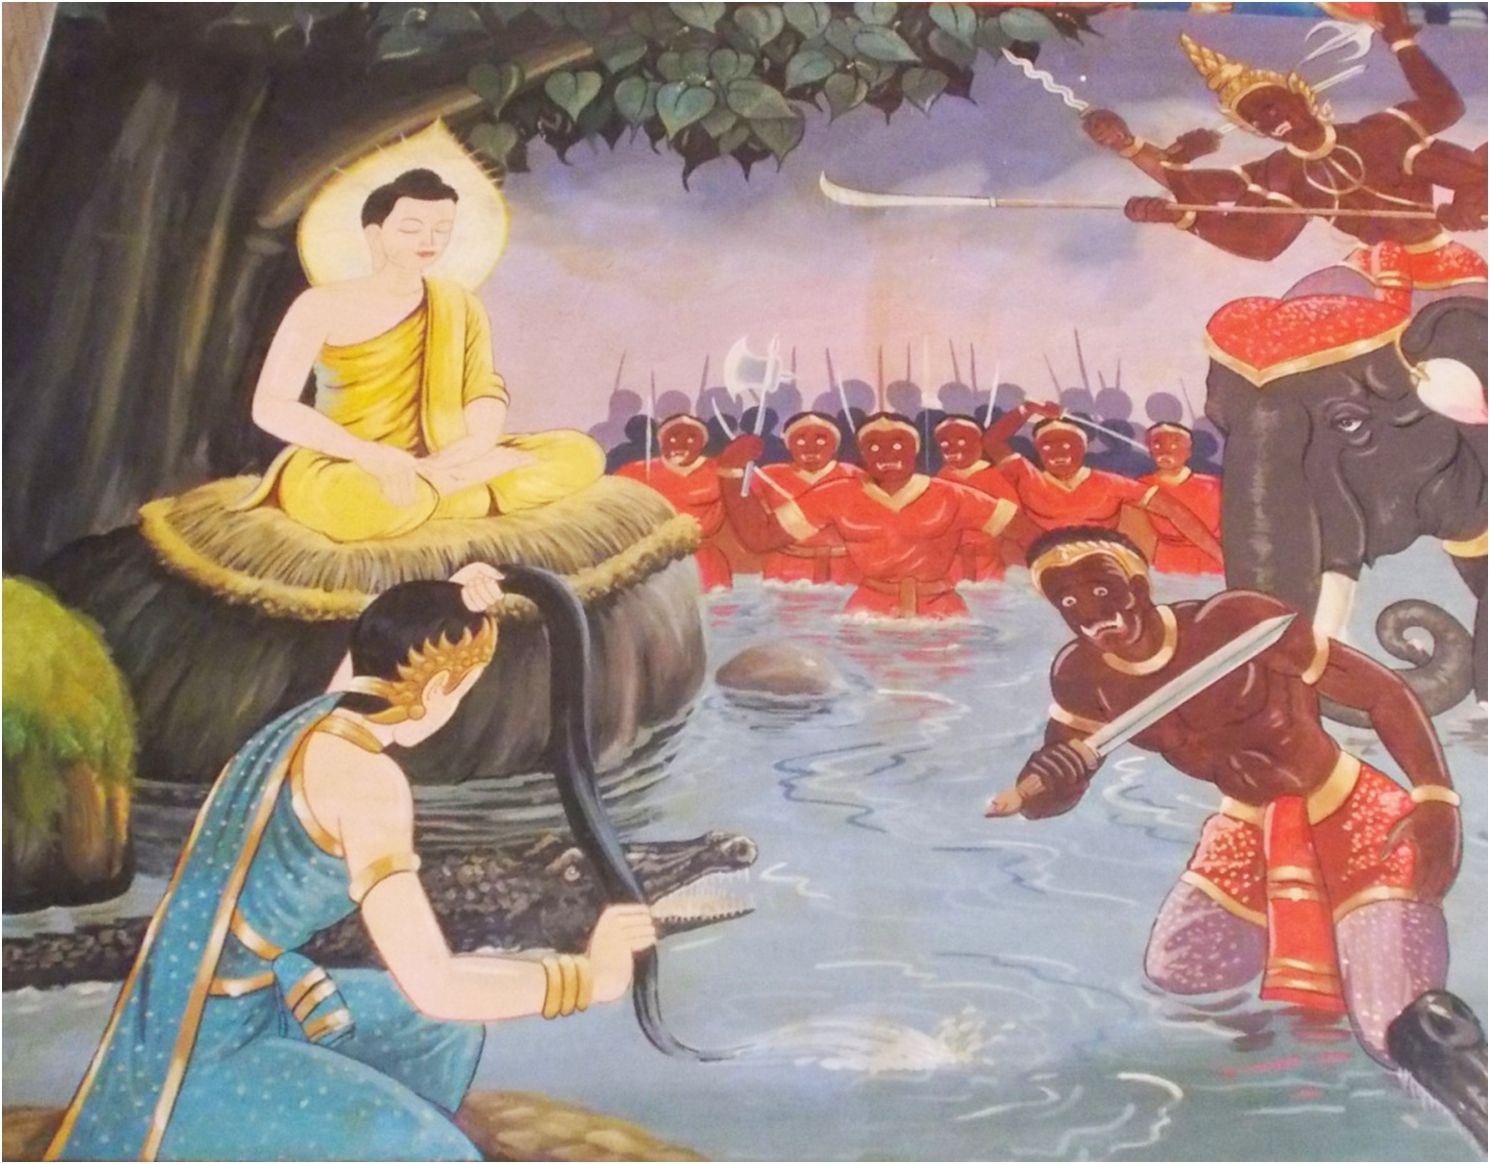 El Buda es atacado por los ejércitos del demonio Mara, que simboliza la tentación (Ubon Ratchathani, Tailandia). 